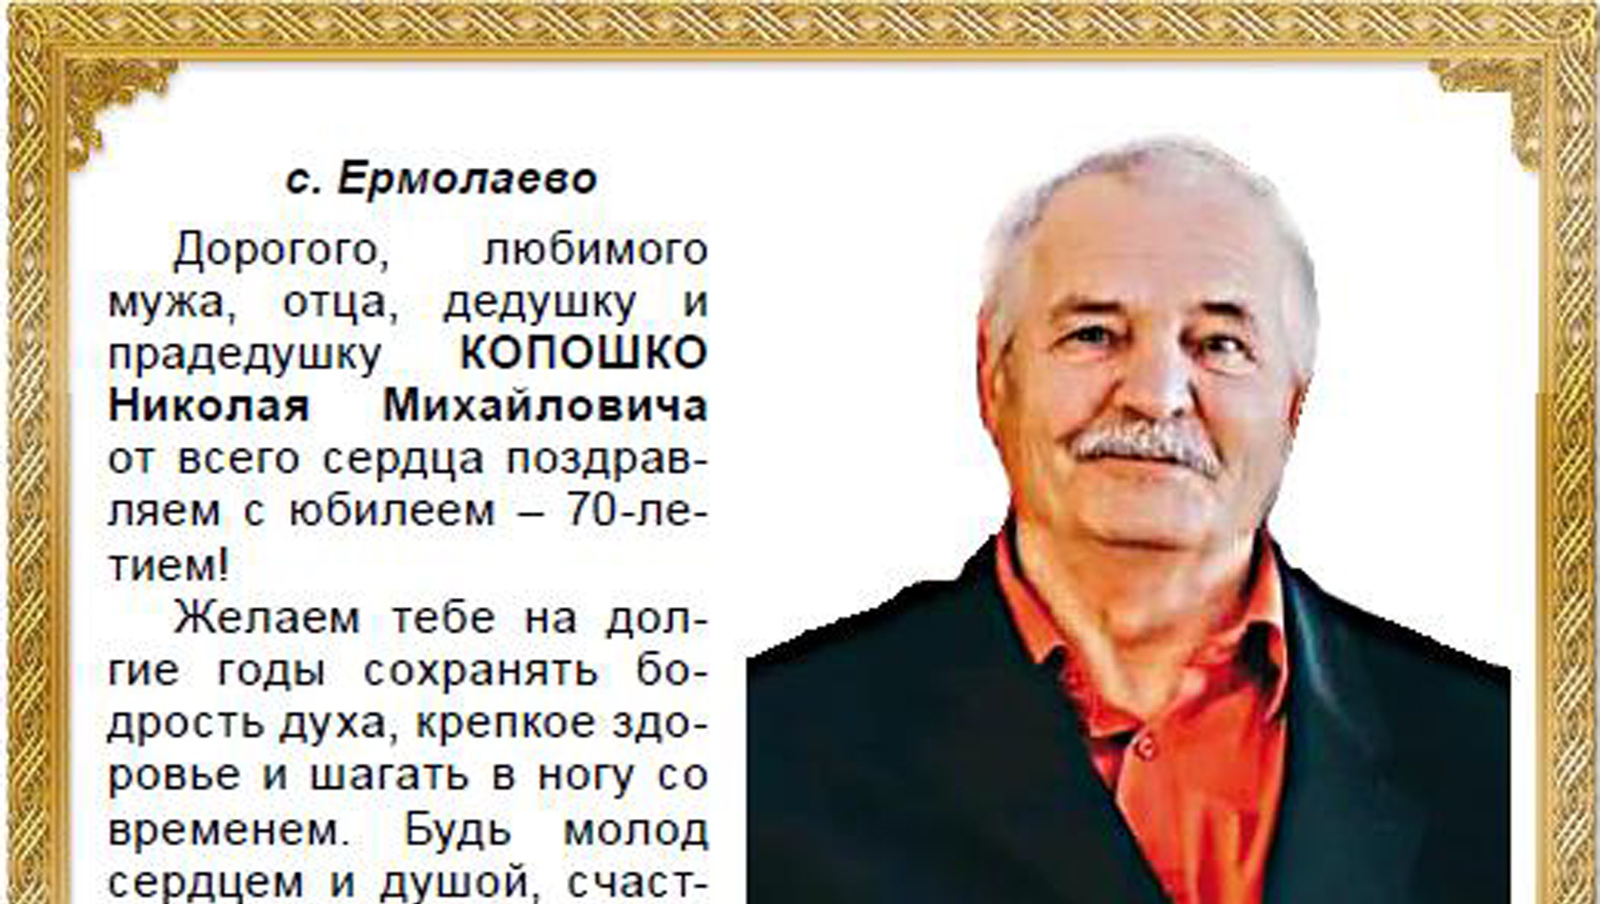 Поздравляем Копошко Николая Михайловича с юбилеем – 70-летием!